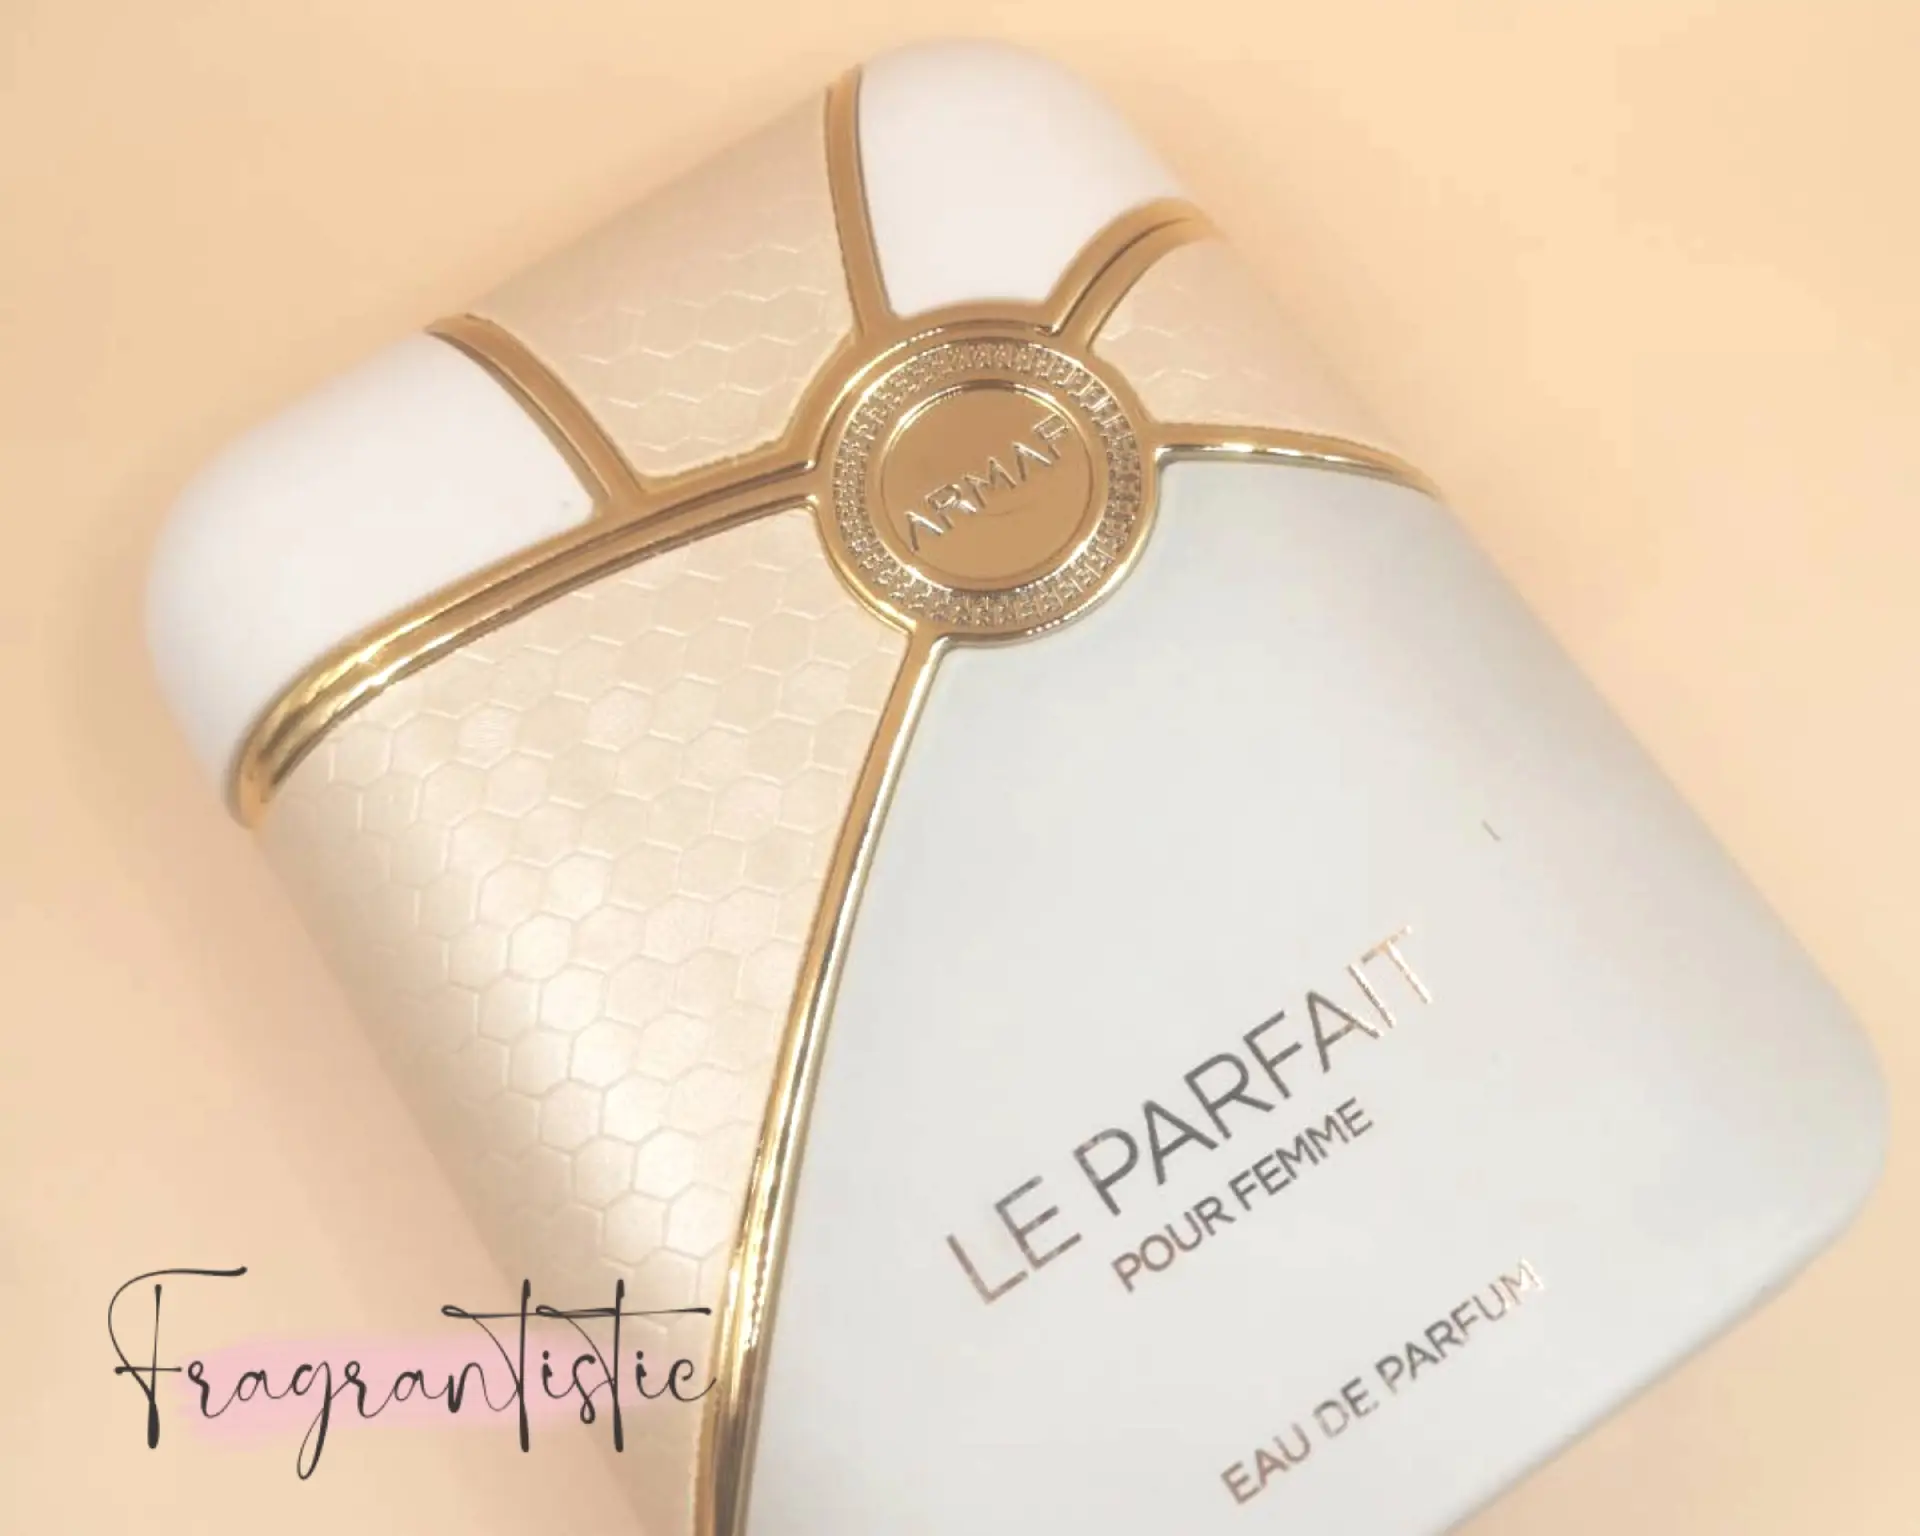 Armaf Le Parfait Panache Pour Femme Perfume For Women 100 ML EDP